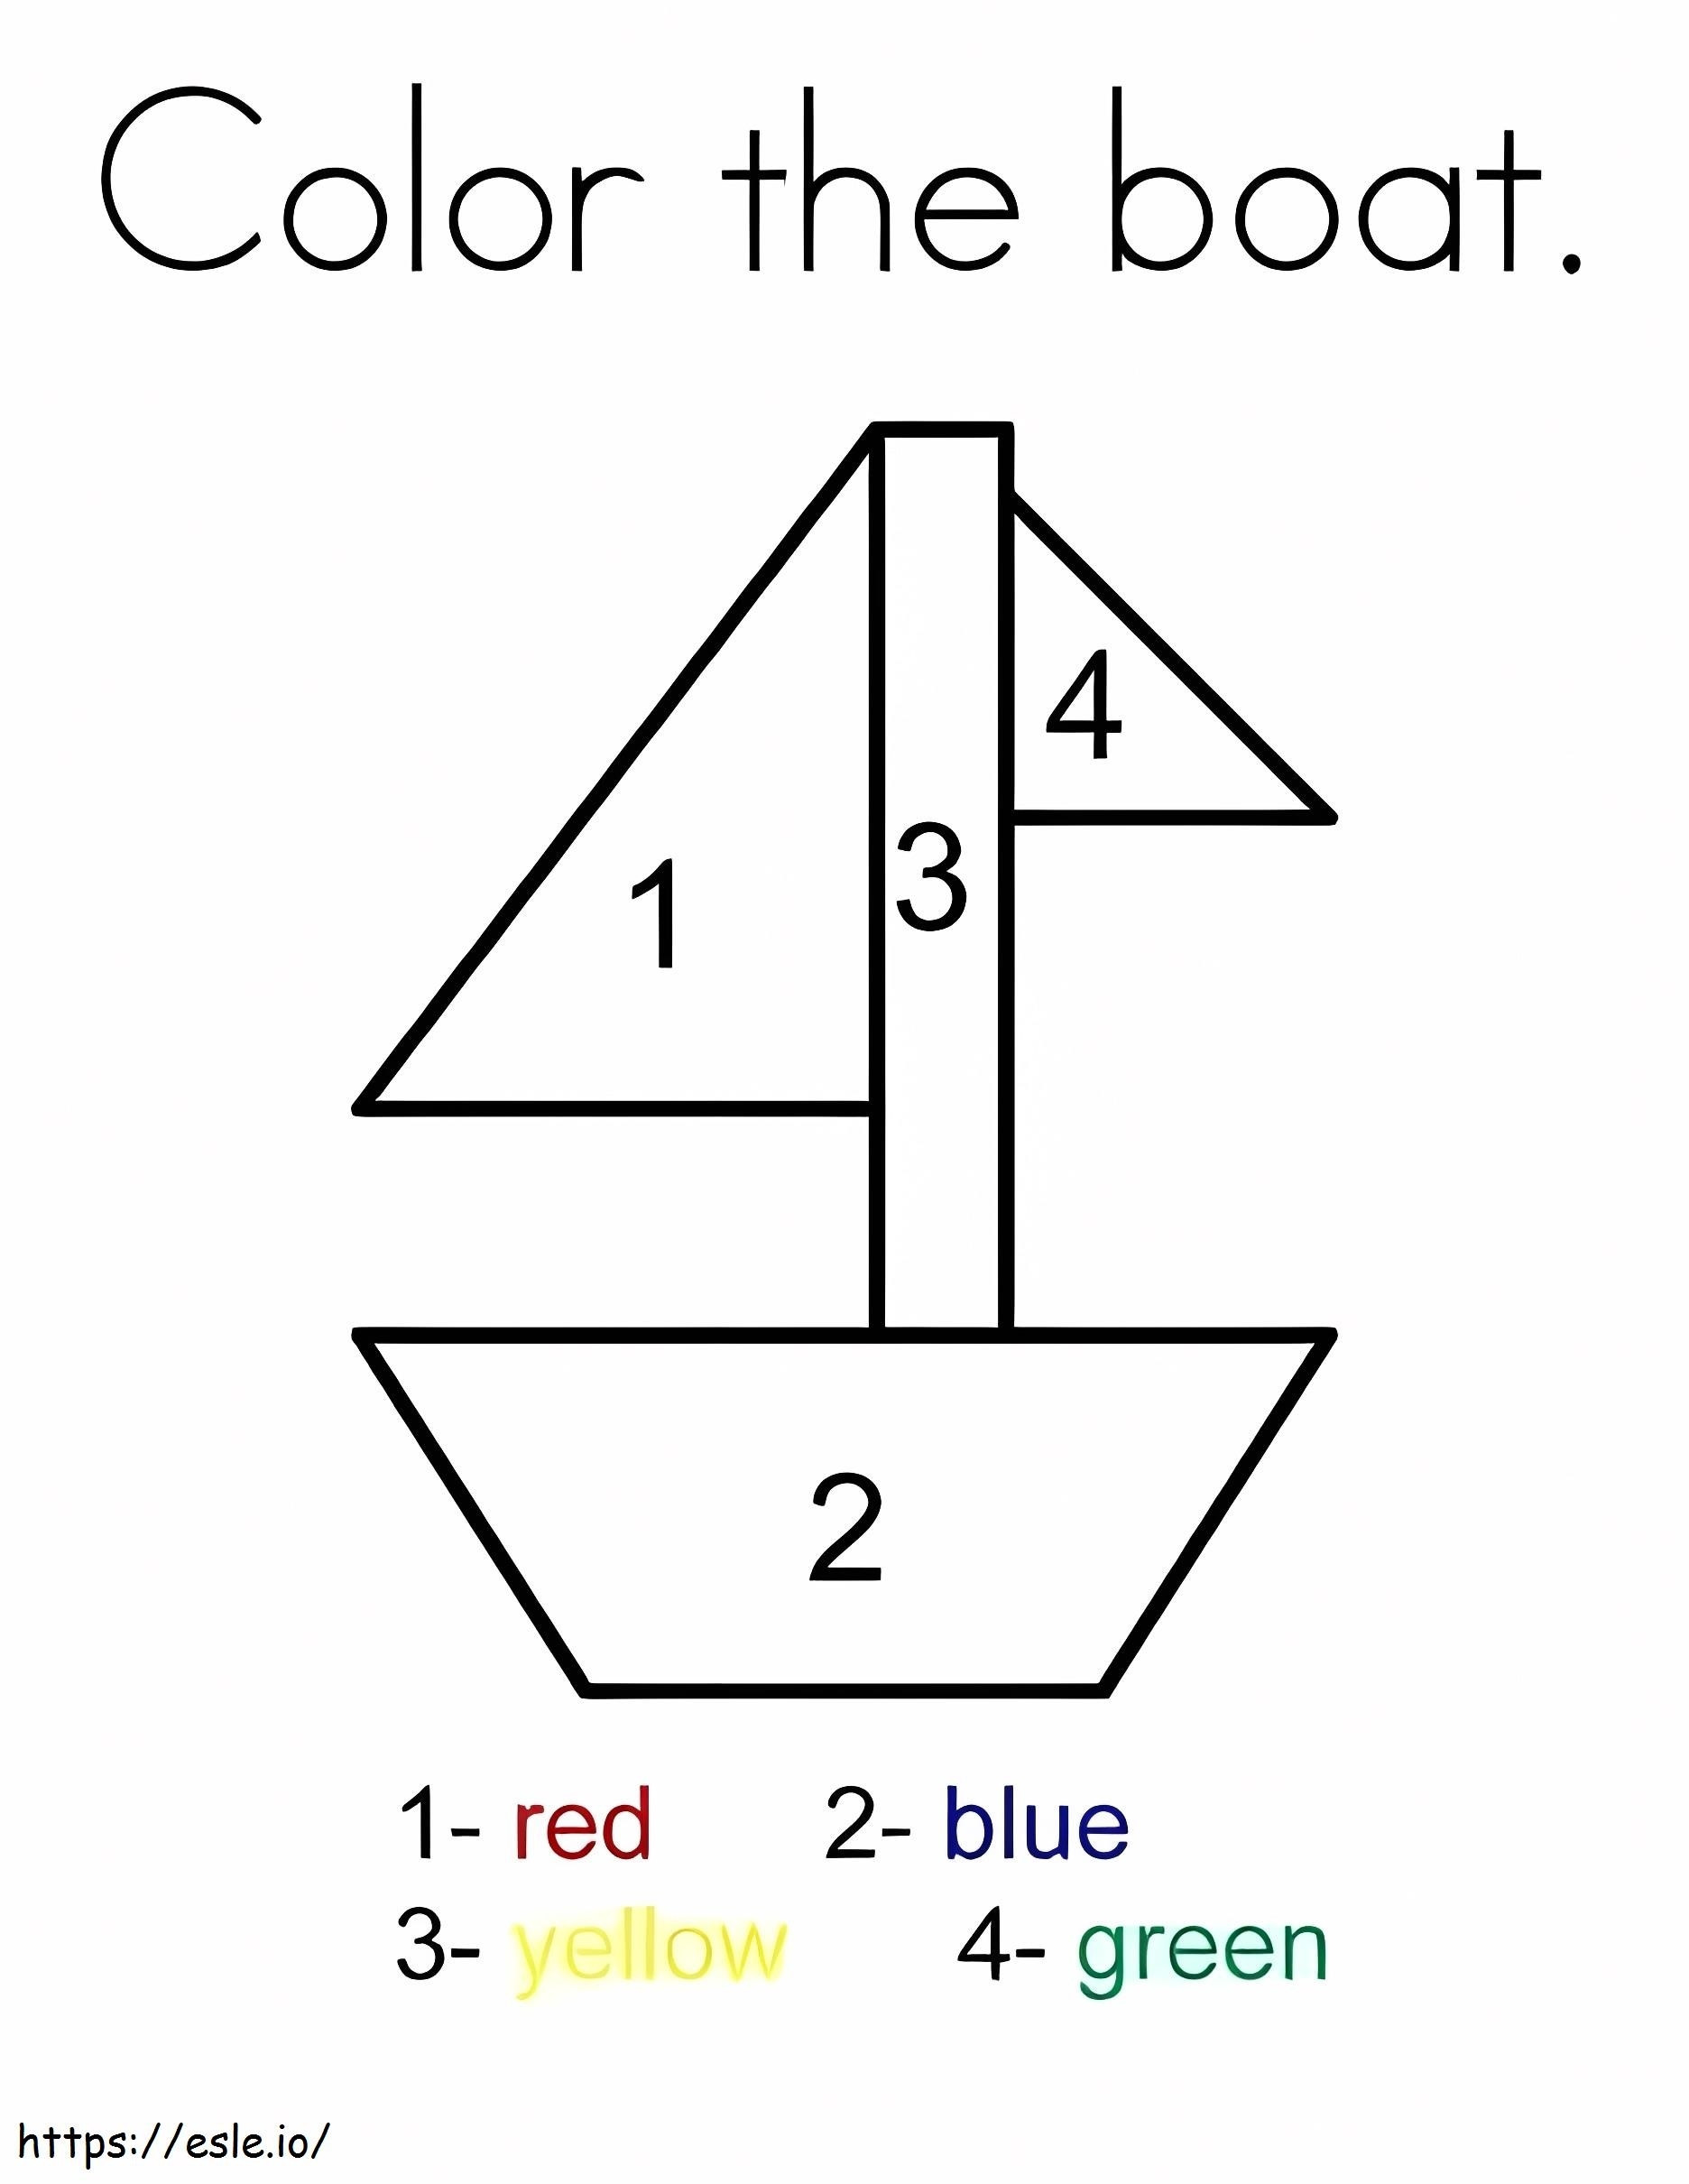 シンプルなボートの番号による色分け ぬりえ - 塗り絵